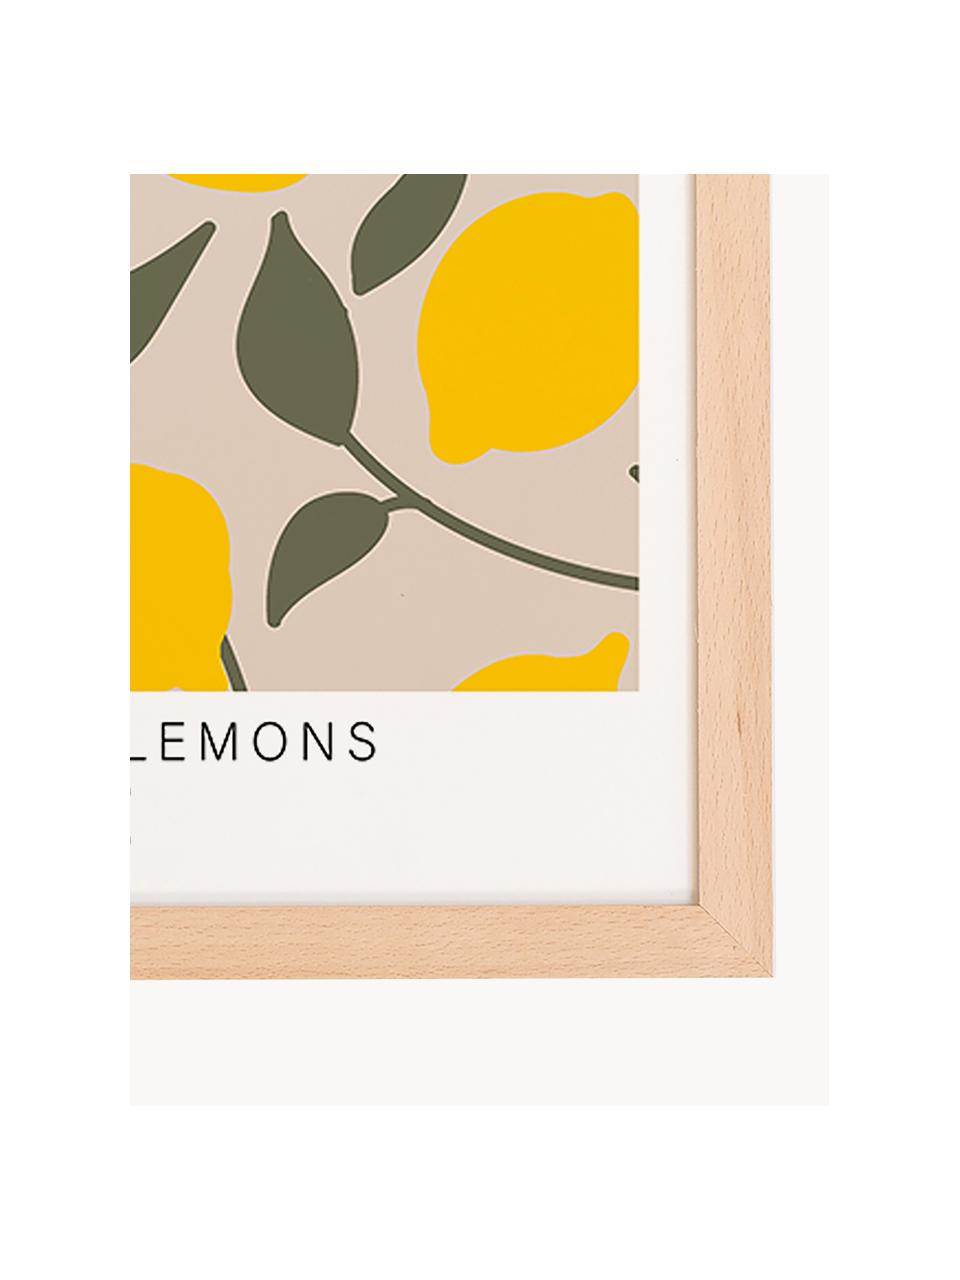 Oprawiony druk cyfrowy Make Lemonade, Jasne drewno naturalne, słoneczny żółty, oliwkowy zielony, S 33 x W 43 cm